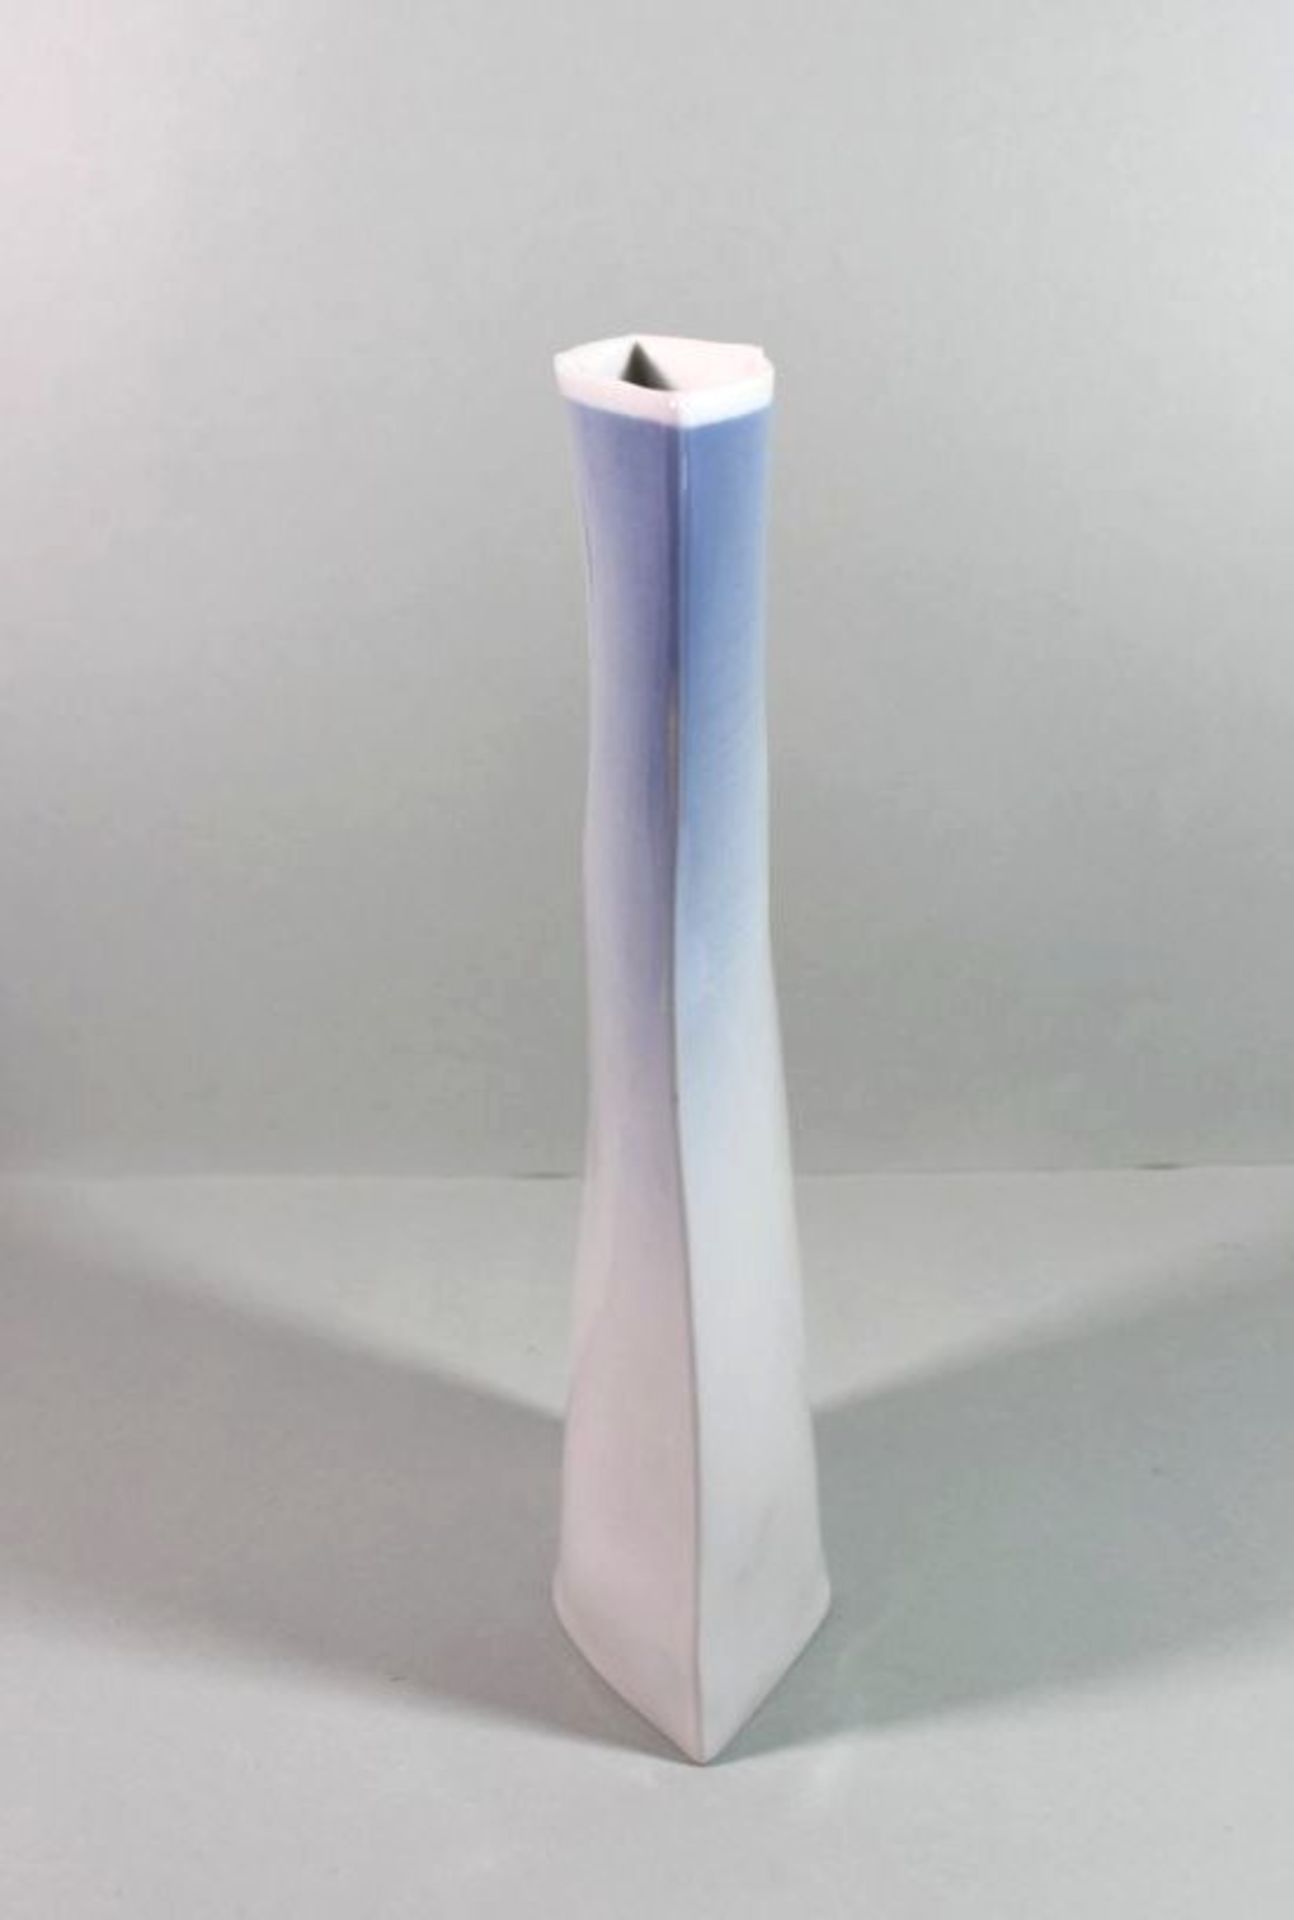 Design-Vase, Rosenthal studio-line, blau/weiß, leicht lüstrierend, signiert, H-24 - Bild 2 aus 3